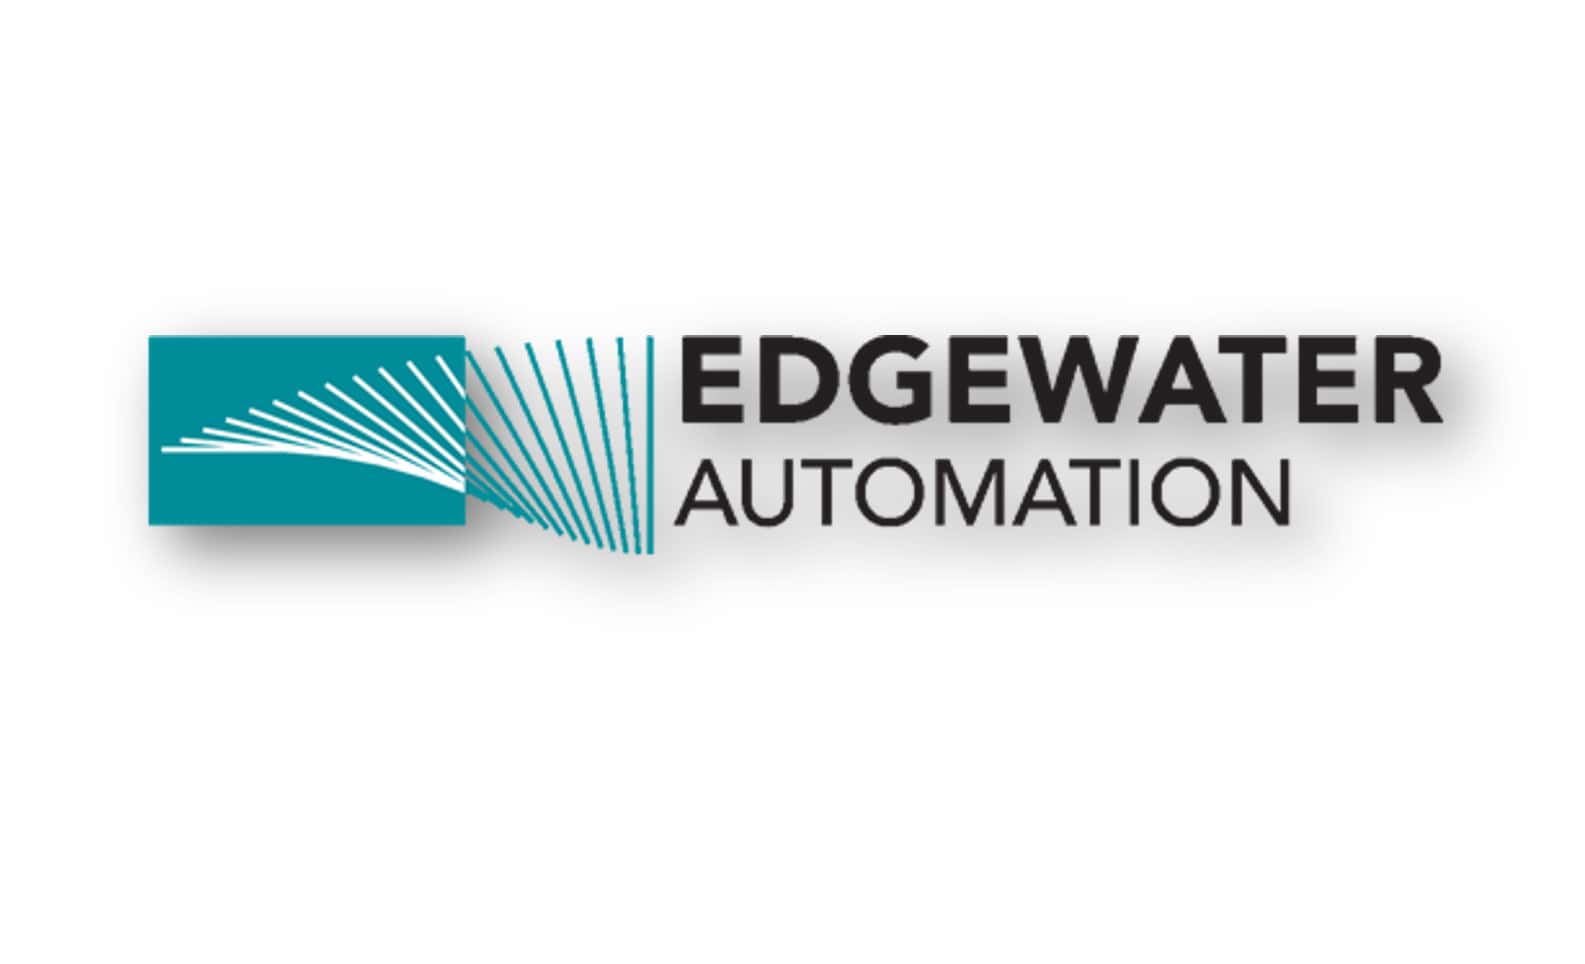 edgewaterautomationlogolong